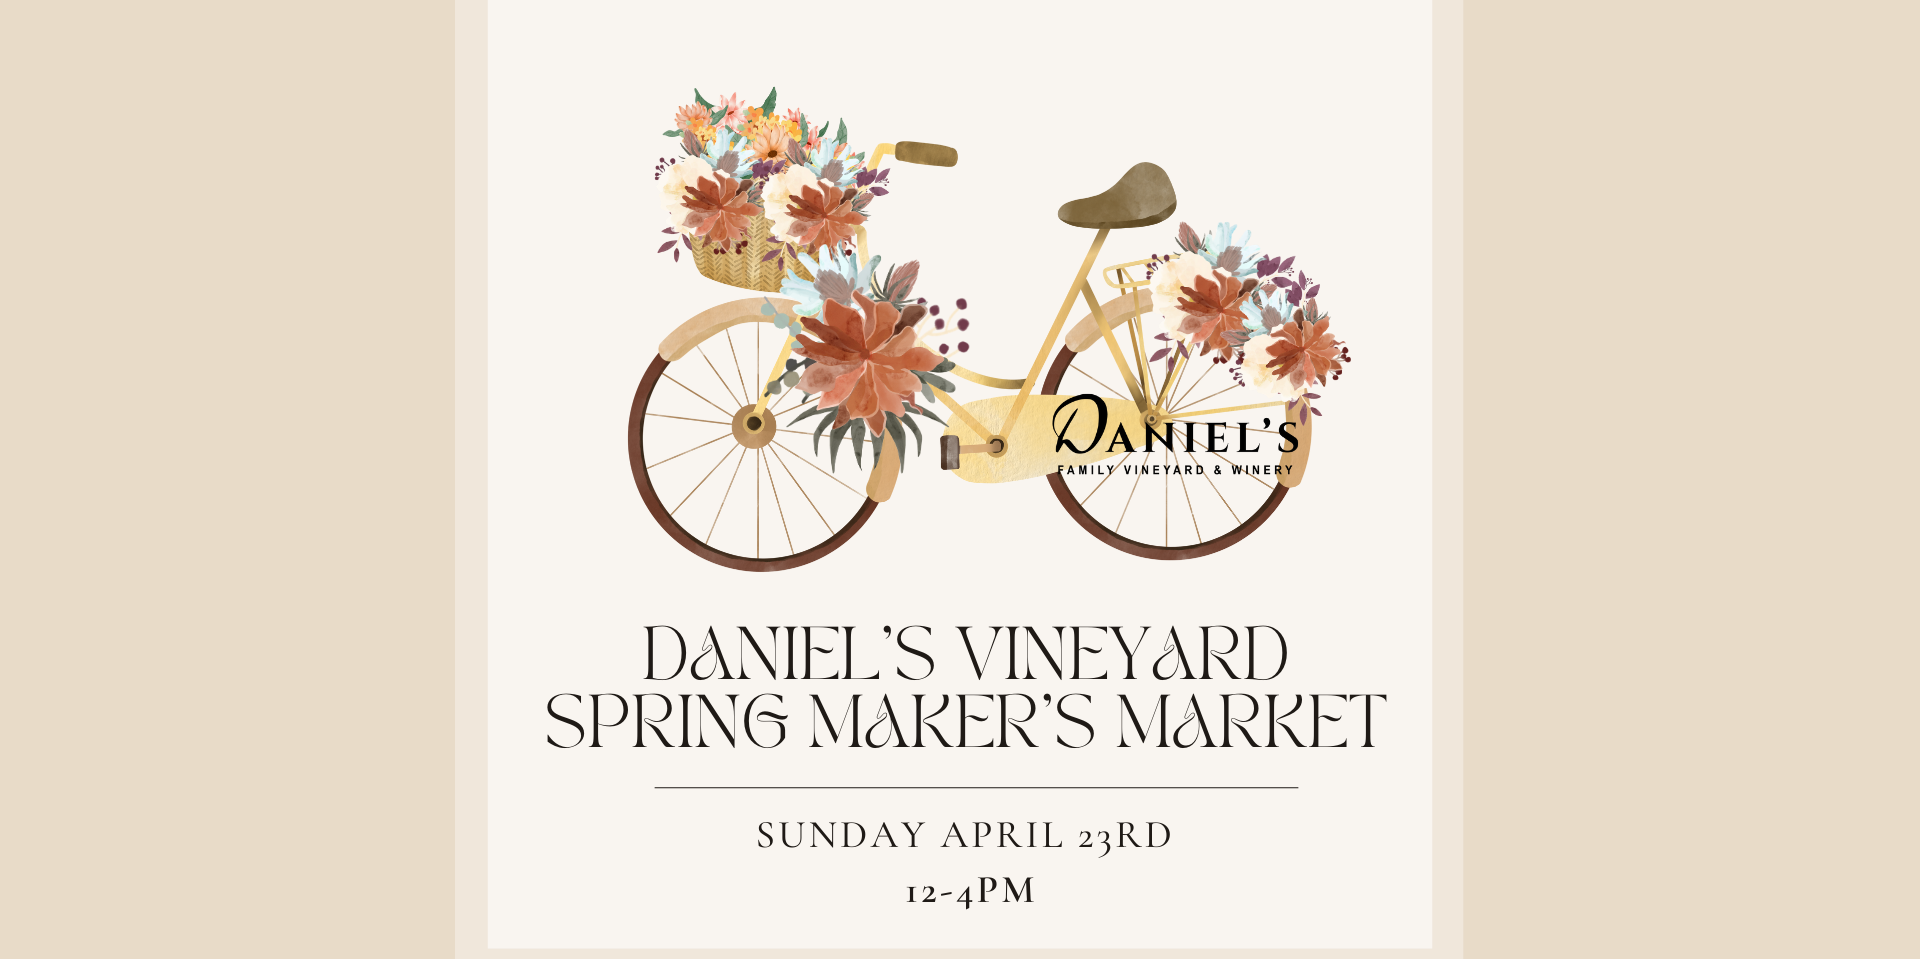 Spring Maker's Market at Daniel's Vineyard promotional image